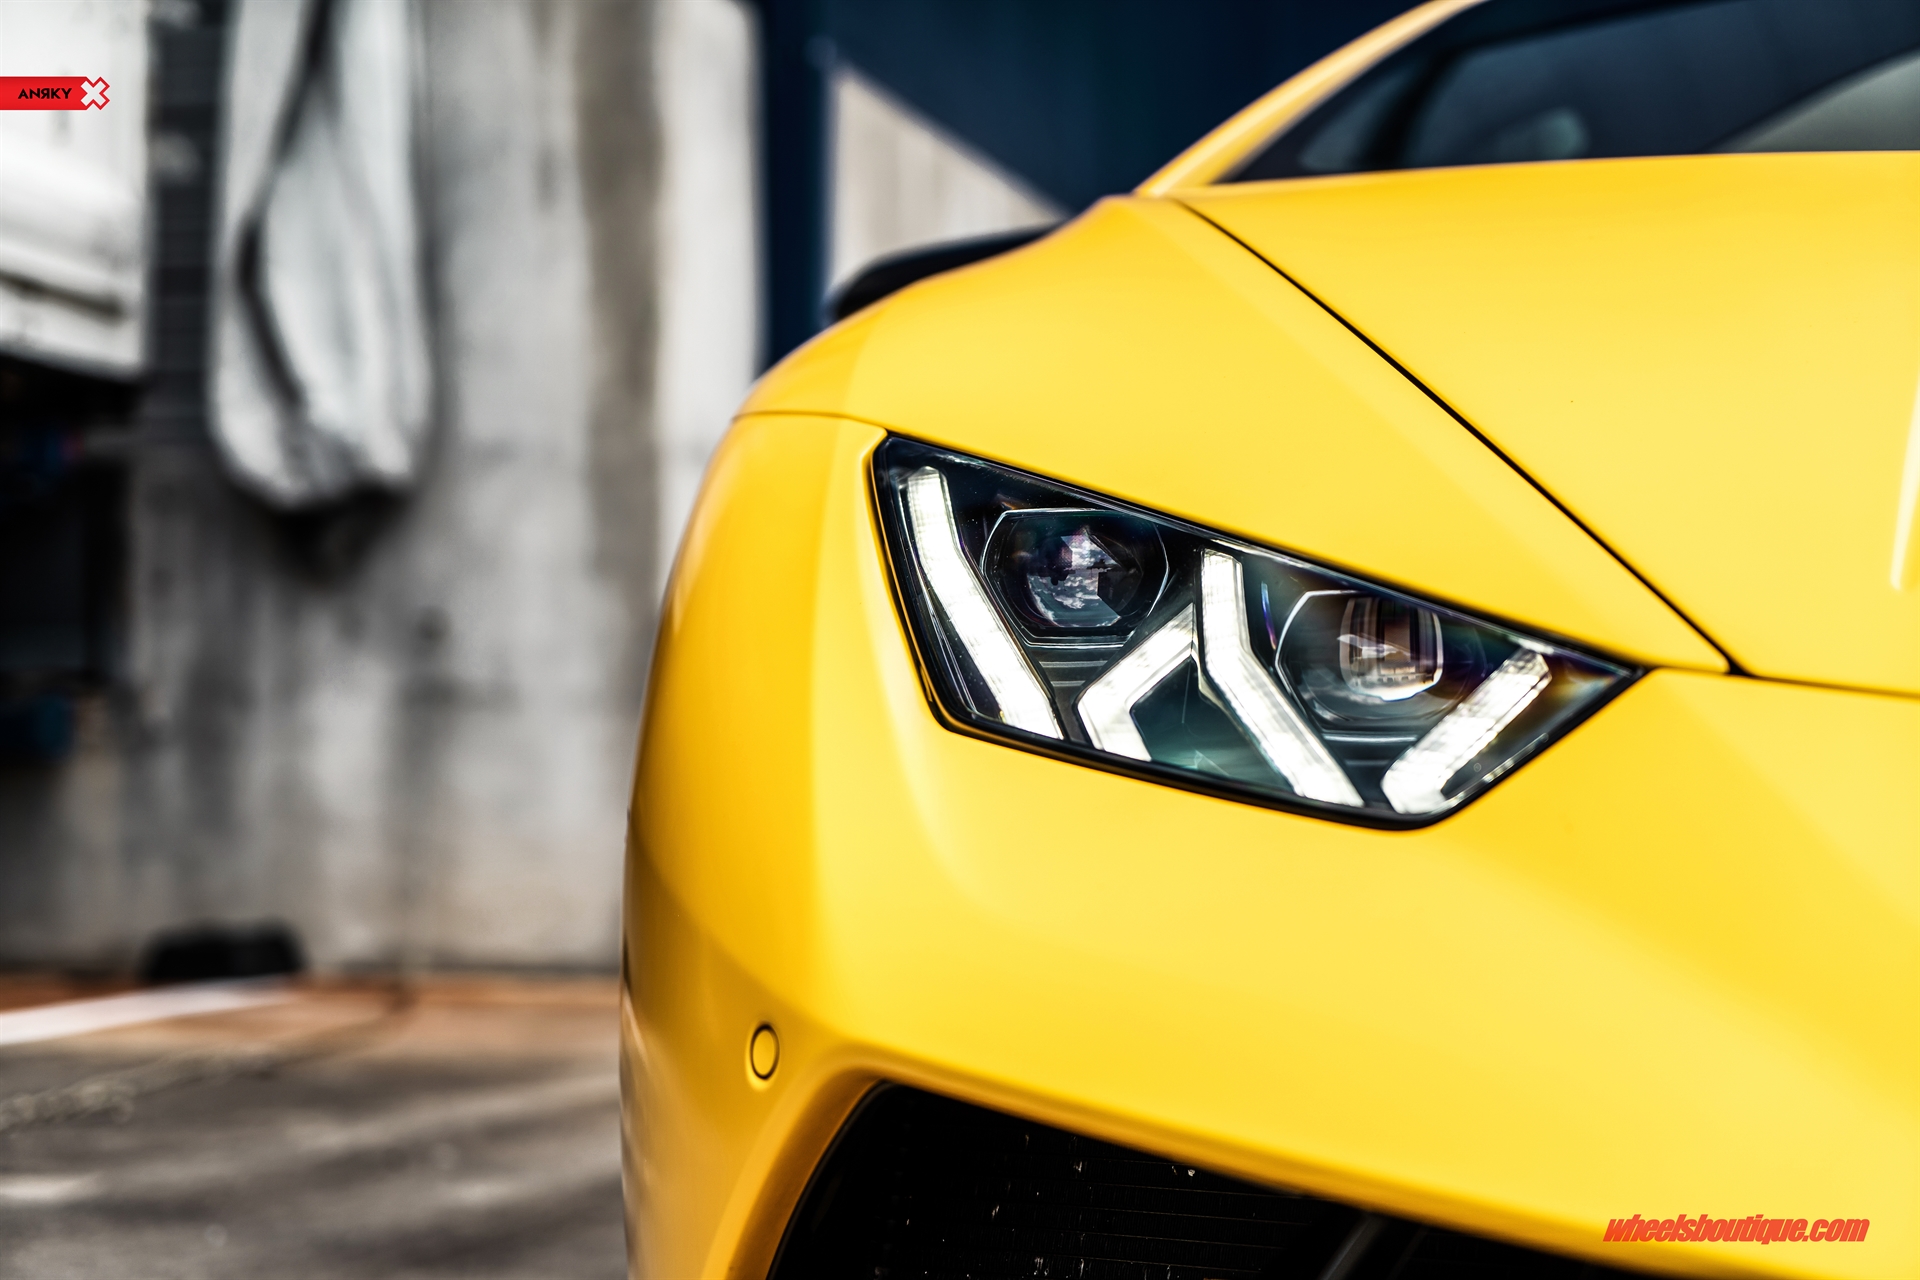 Chiếc xe hơi Lamborghini Huracan Performante là biểu tượng của tốc độ và sức mạnh. Hãy xem hình ảnh và khám phá design đầy uy lực của chiếc xe này.